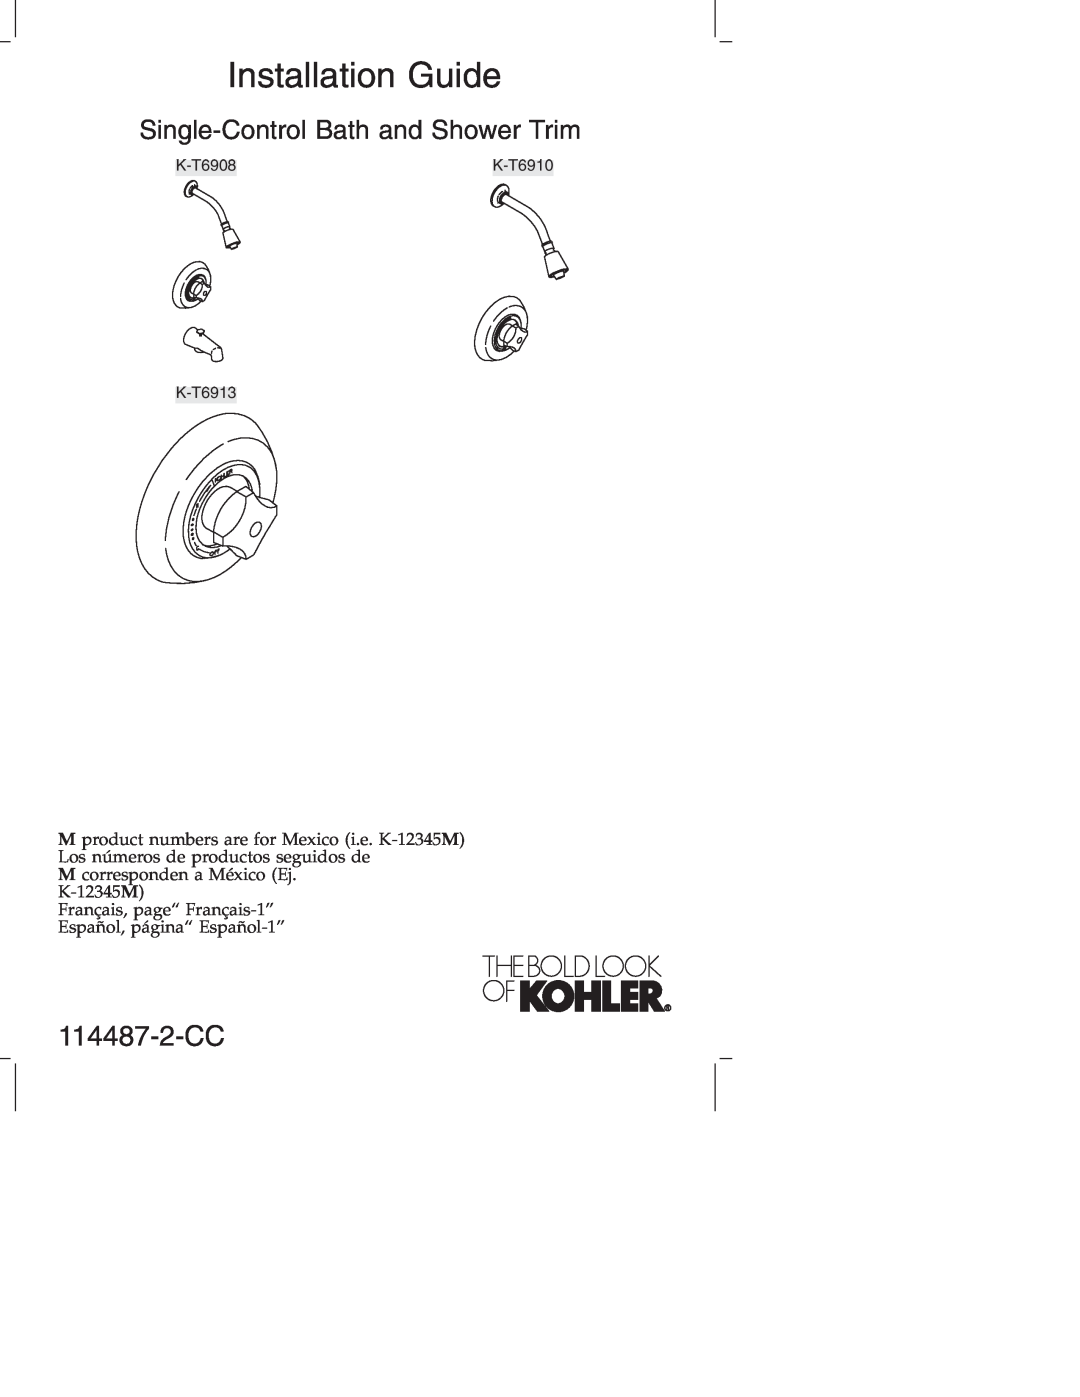 Kohler KT6910, KT6913, KT6908 manual 114487-2-CC, Installation Guide, Single-ControlBath and Shower Trim 